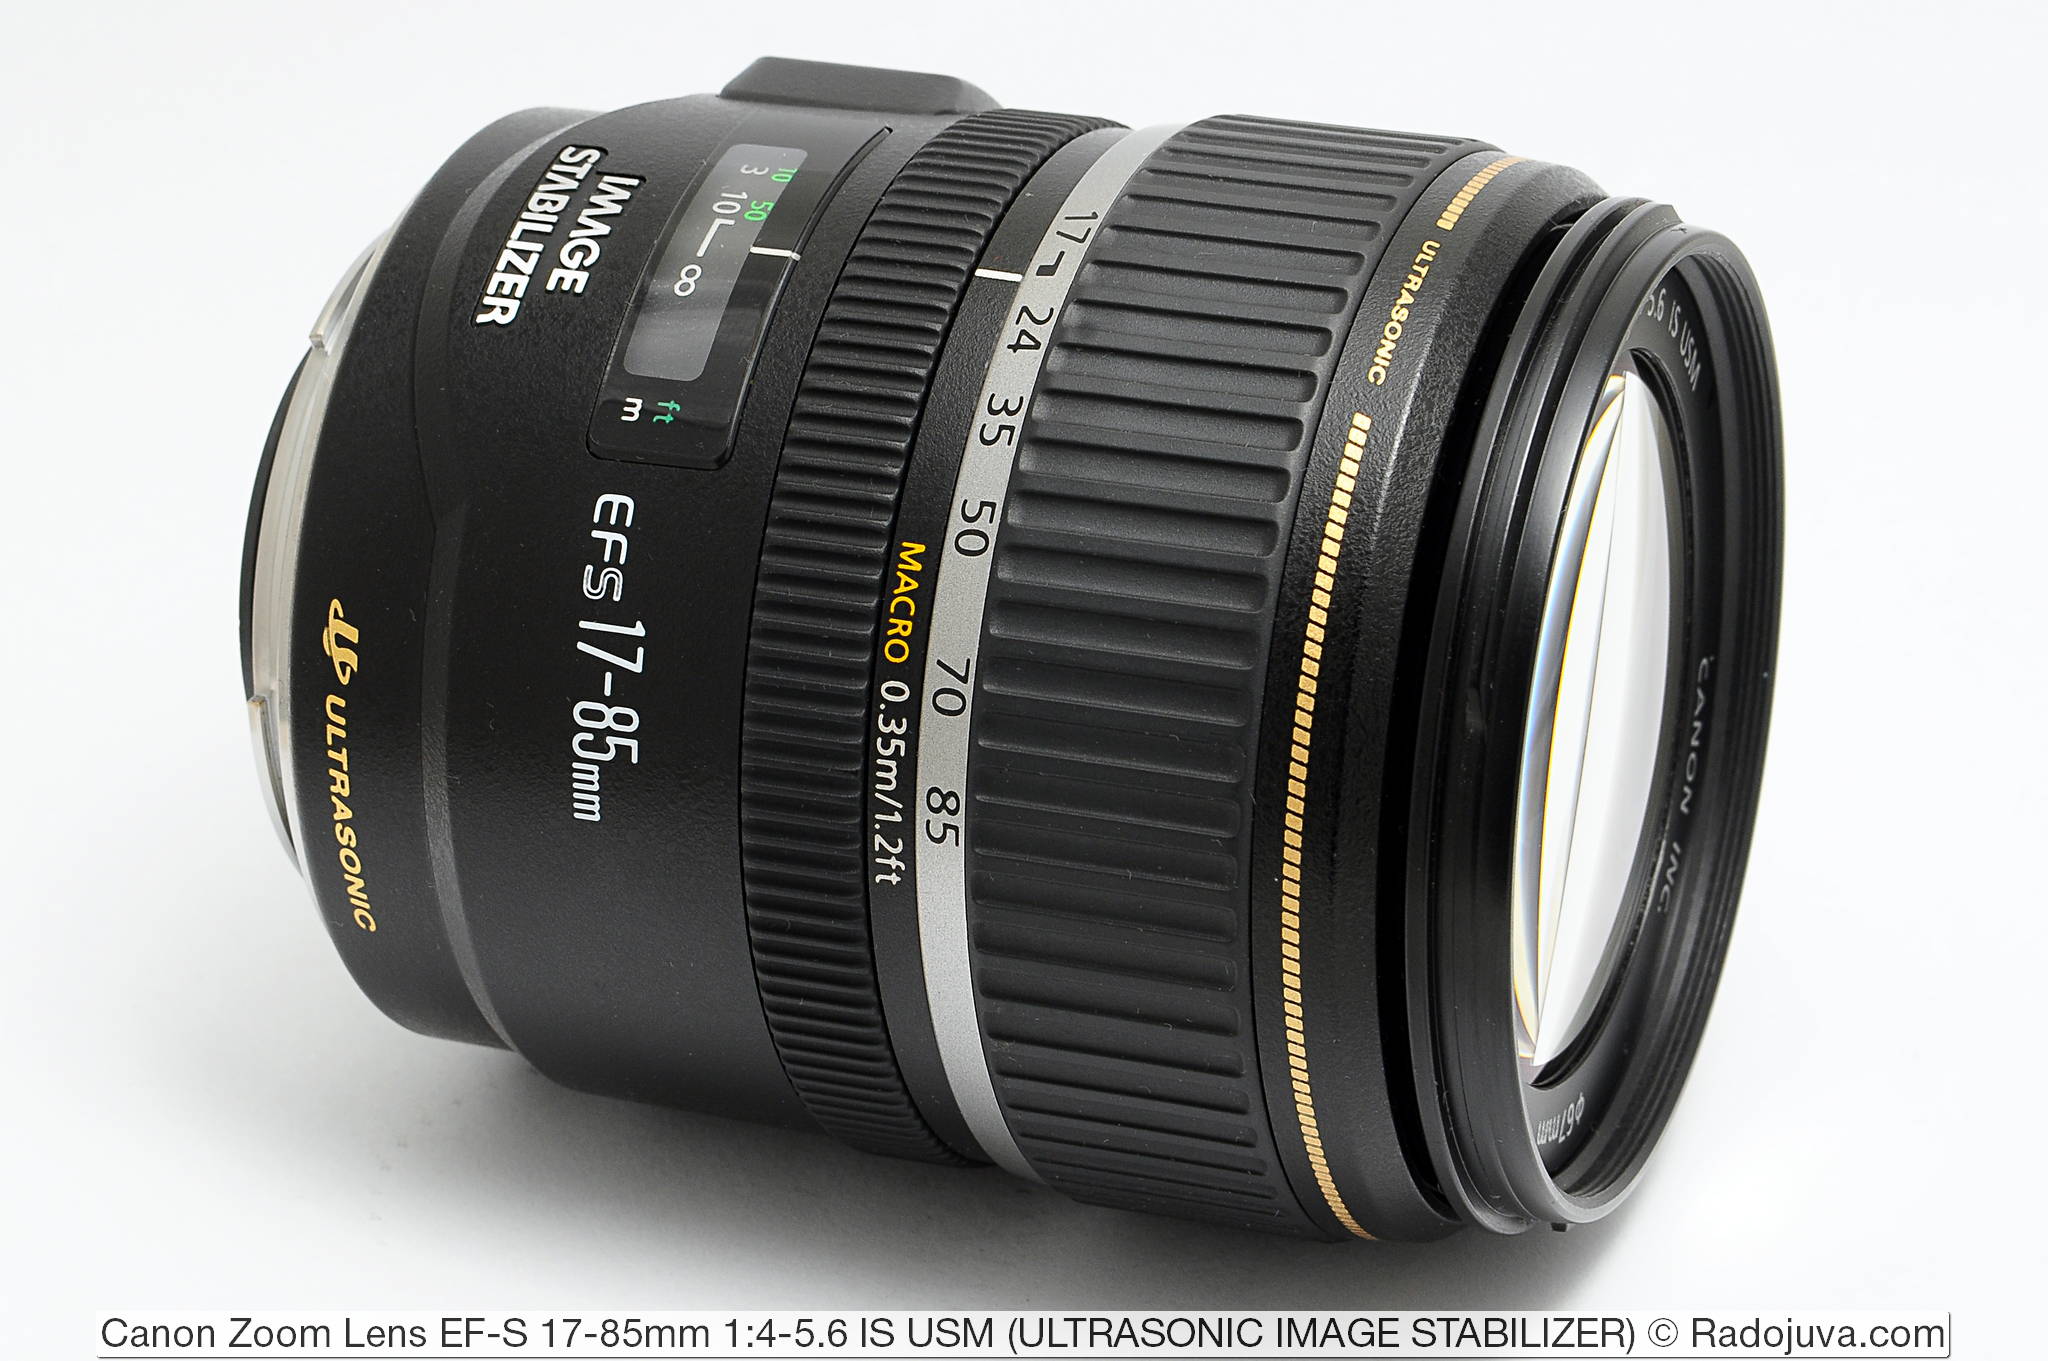 Gespecificeerd Encyclopedie magie Review of Canon Zoom Lens EF-S 17-85mm 1: 4-5.6 IS USM | Happy